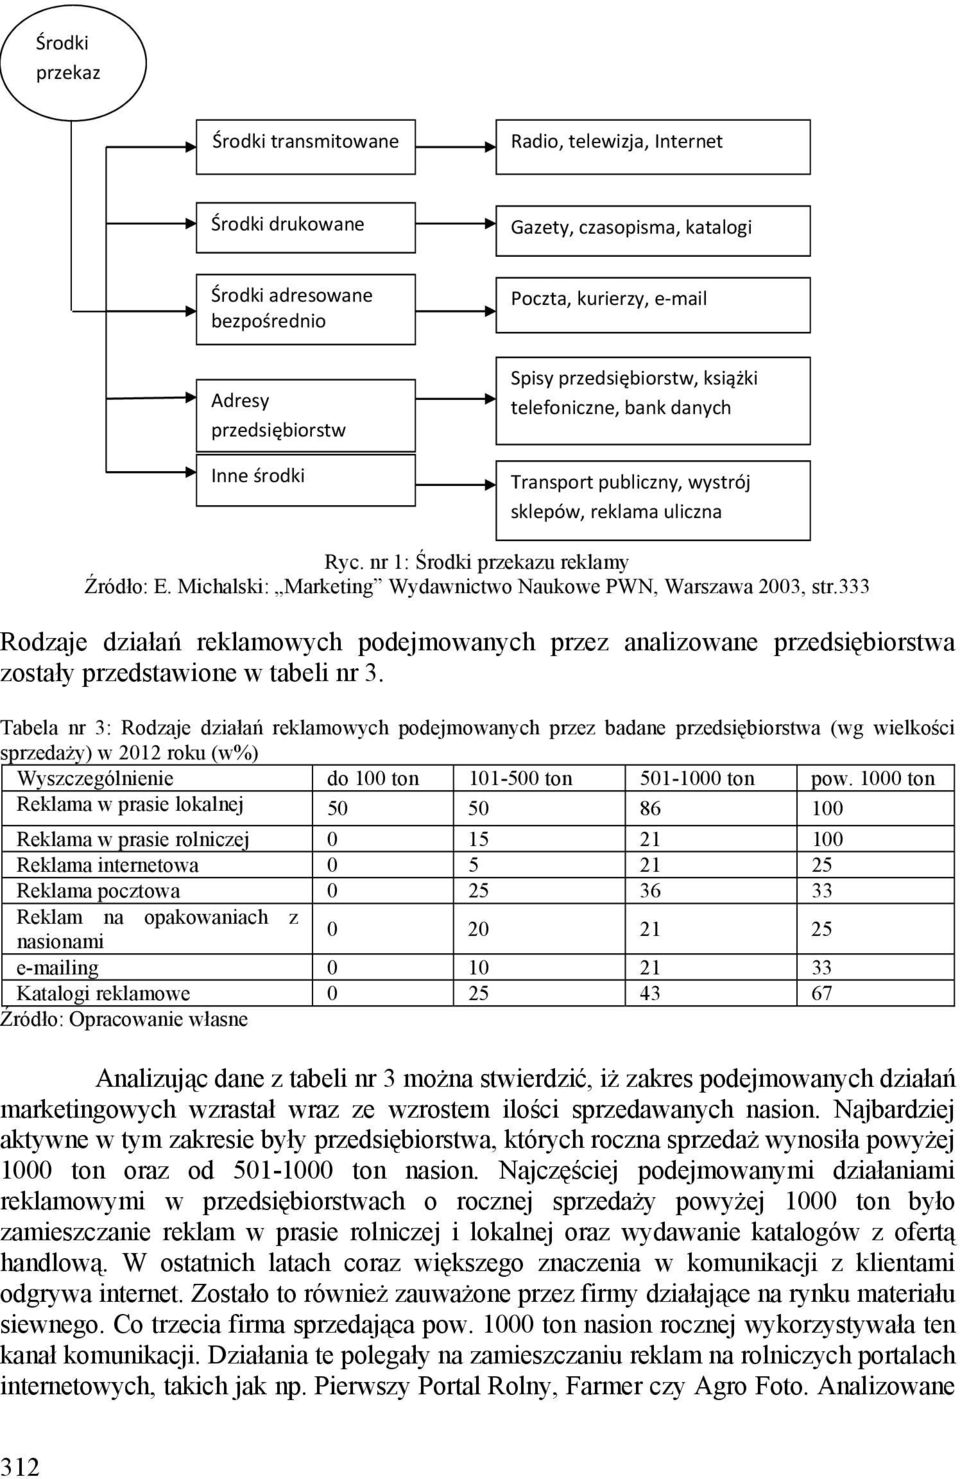 Michalski: Marketing Wydawnictwo Naukowe PWN, Warszawa 2003, str.333 Rodzaje działań reklamowych podejmowanych przez analizowane przedsiębiorstwa zostały przedstawione w tabeli nr 3.